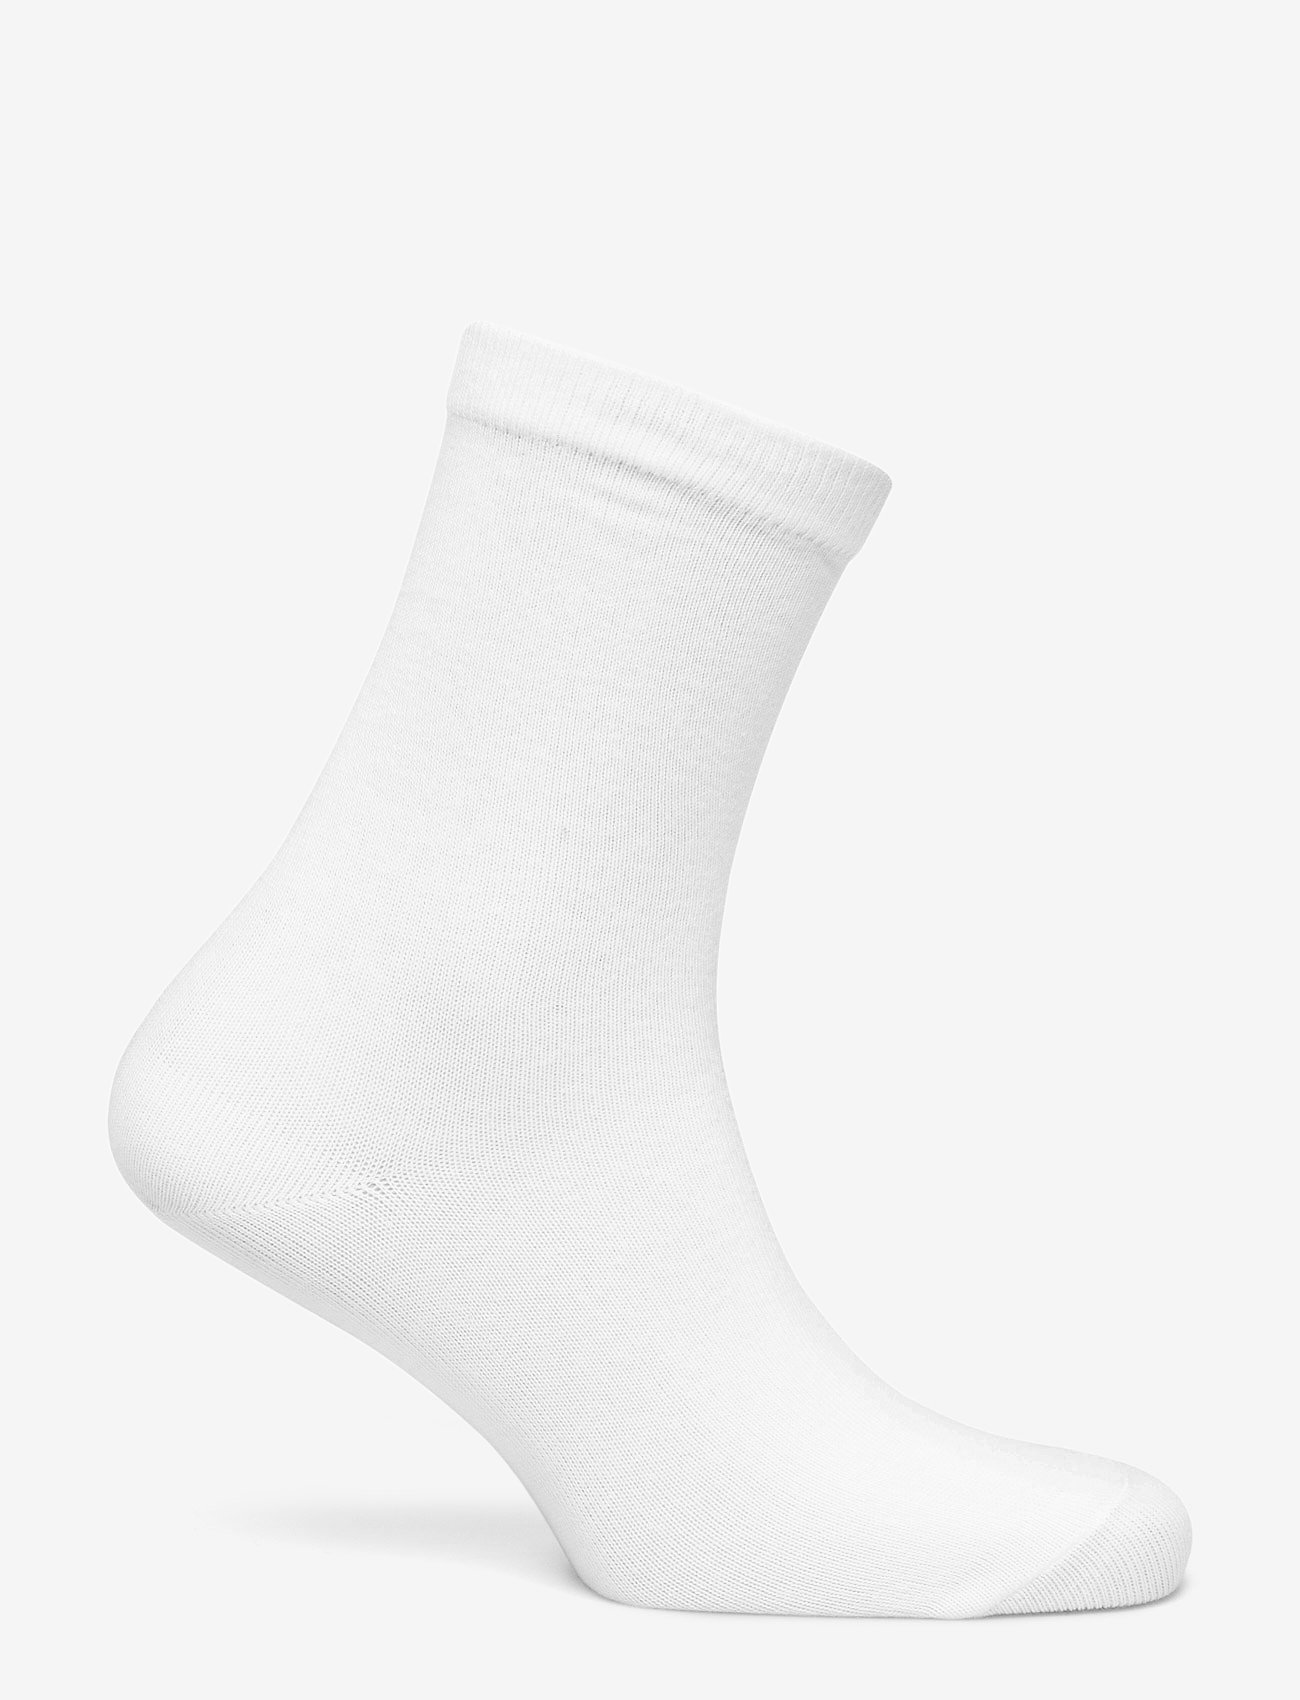 mp Denmark - Cotton socks - laveste priser - 1/white - 1